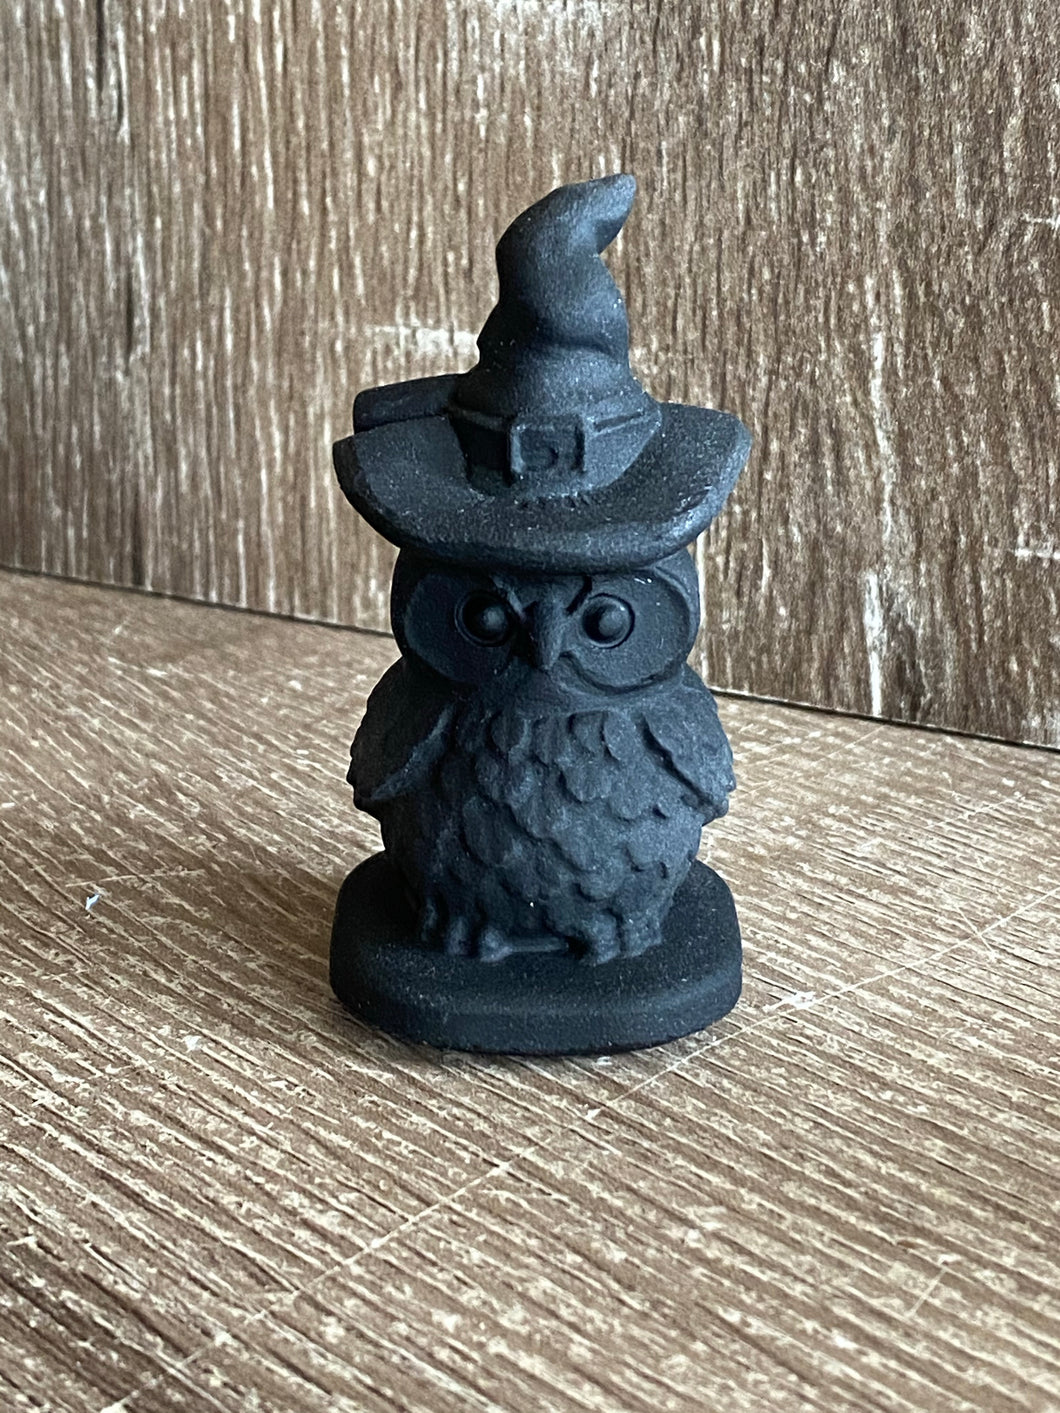 Witch owl figurine